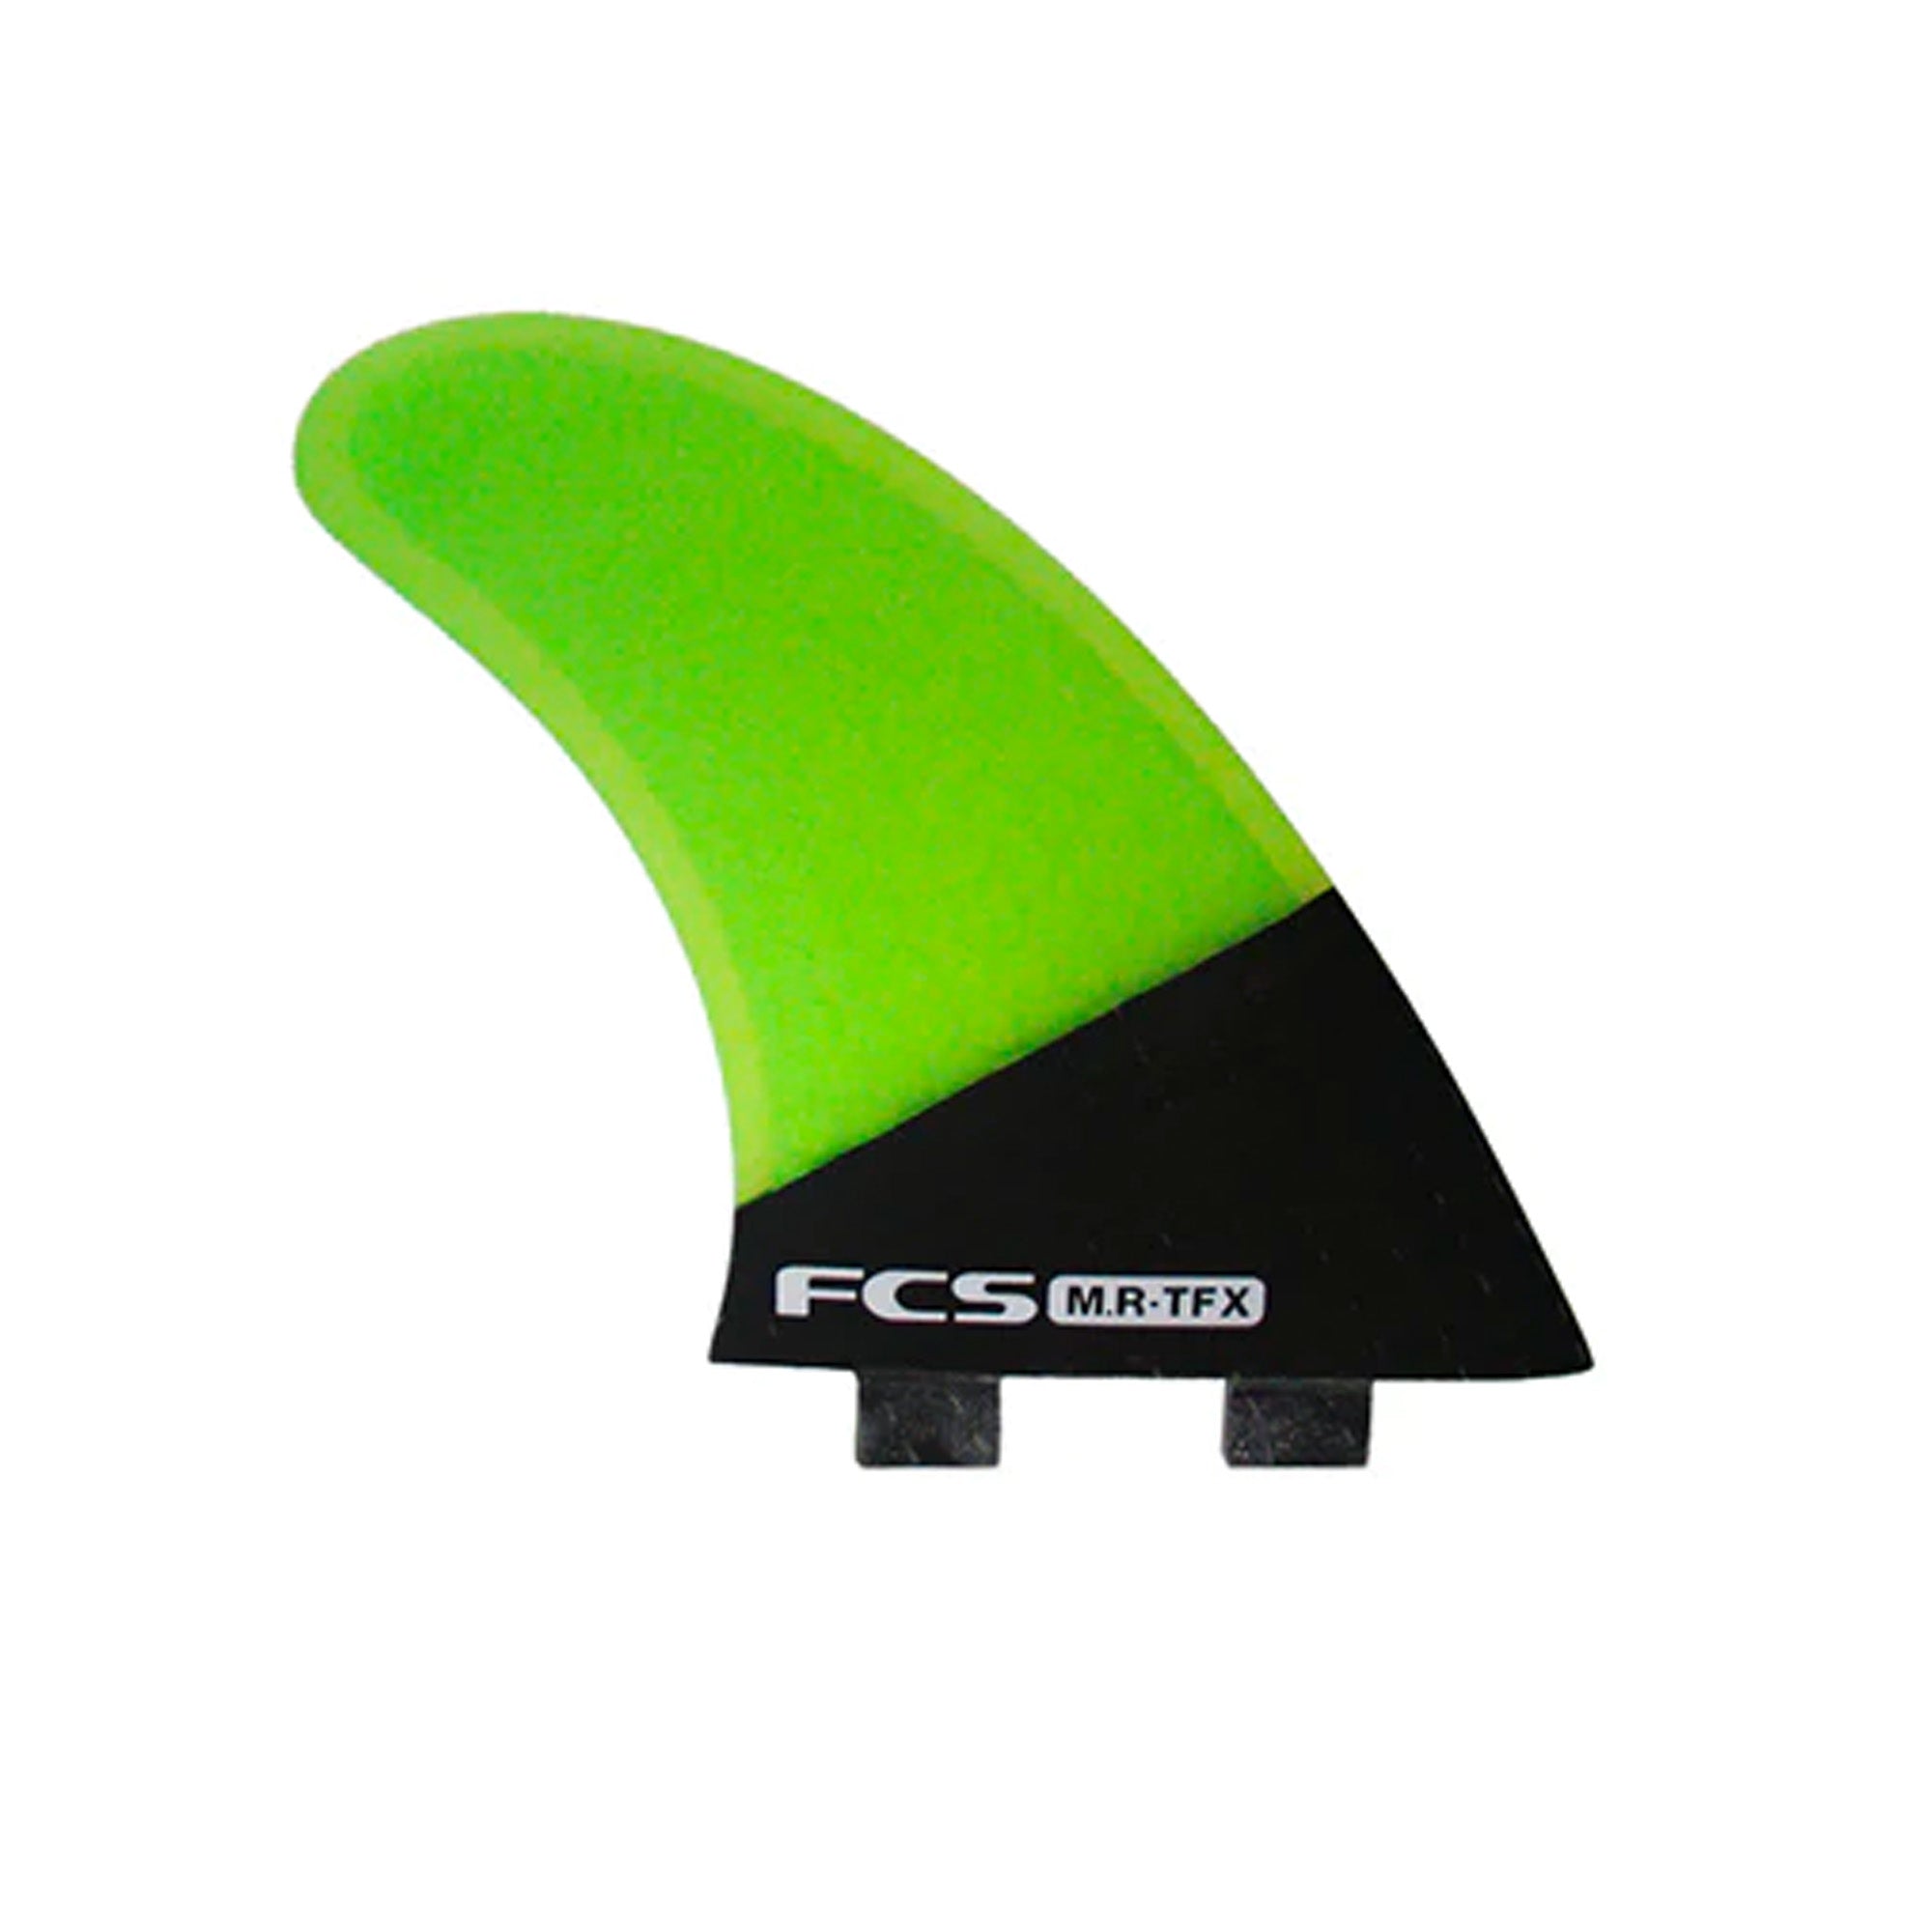 FCS MR-TFX PC Tri Surfboard Fins